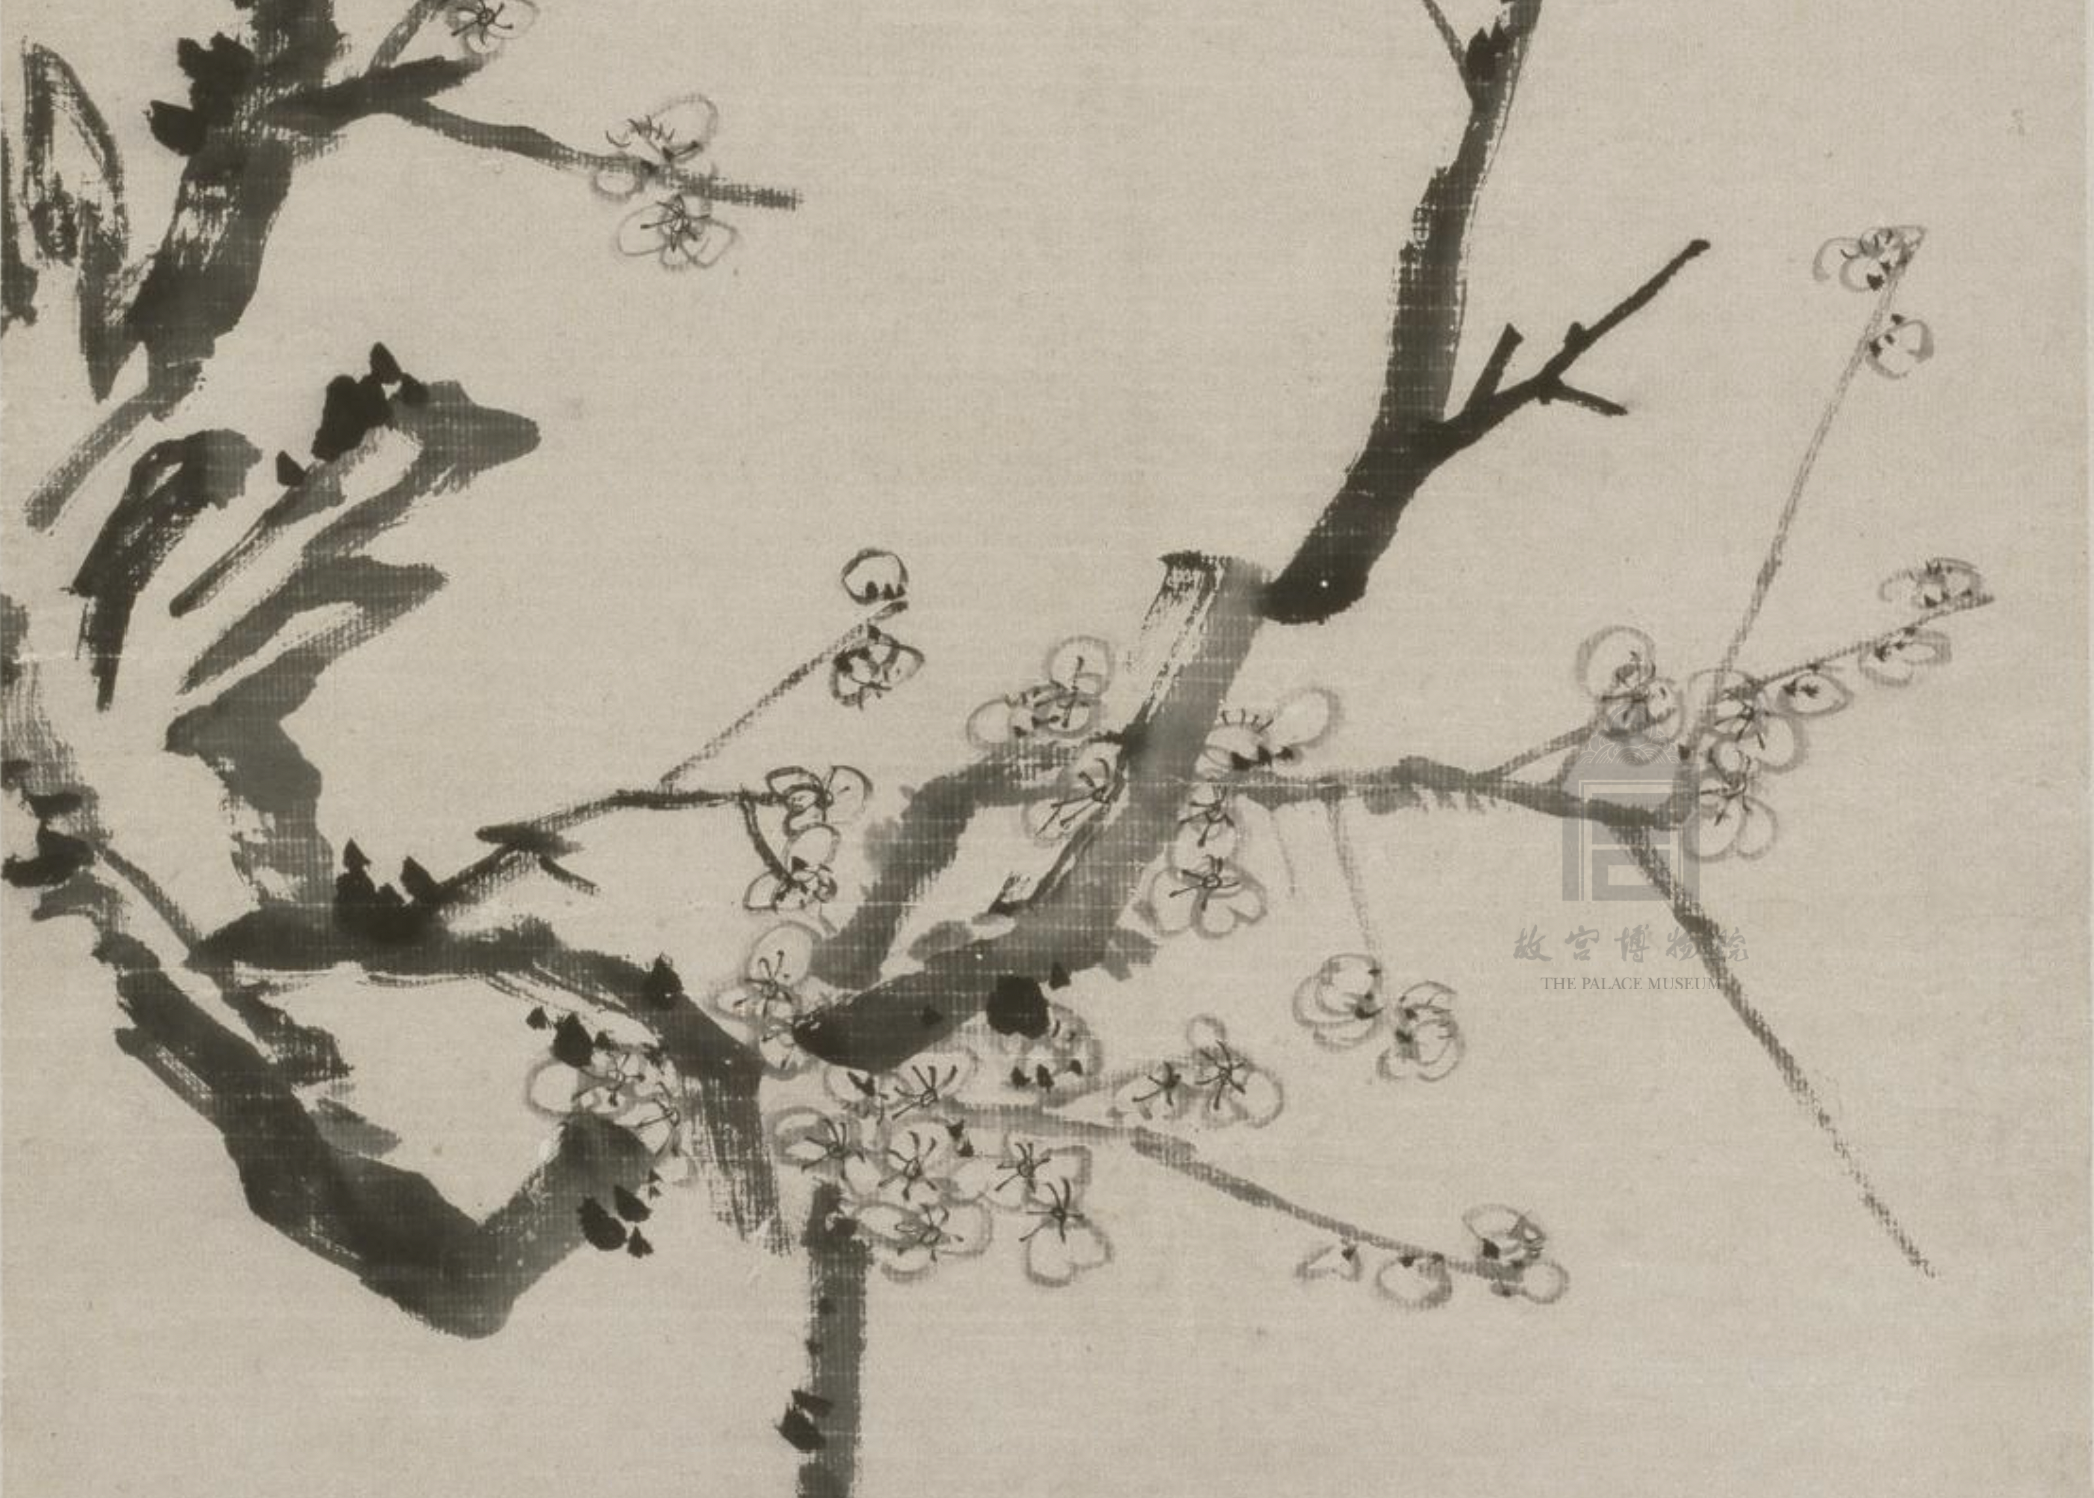 清 李方膺 墨梅图 轴(局部) 故宫博物院藏图中的折枝梅花具有强烈的